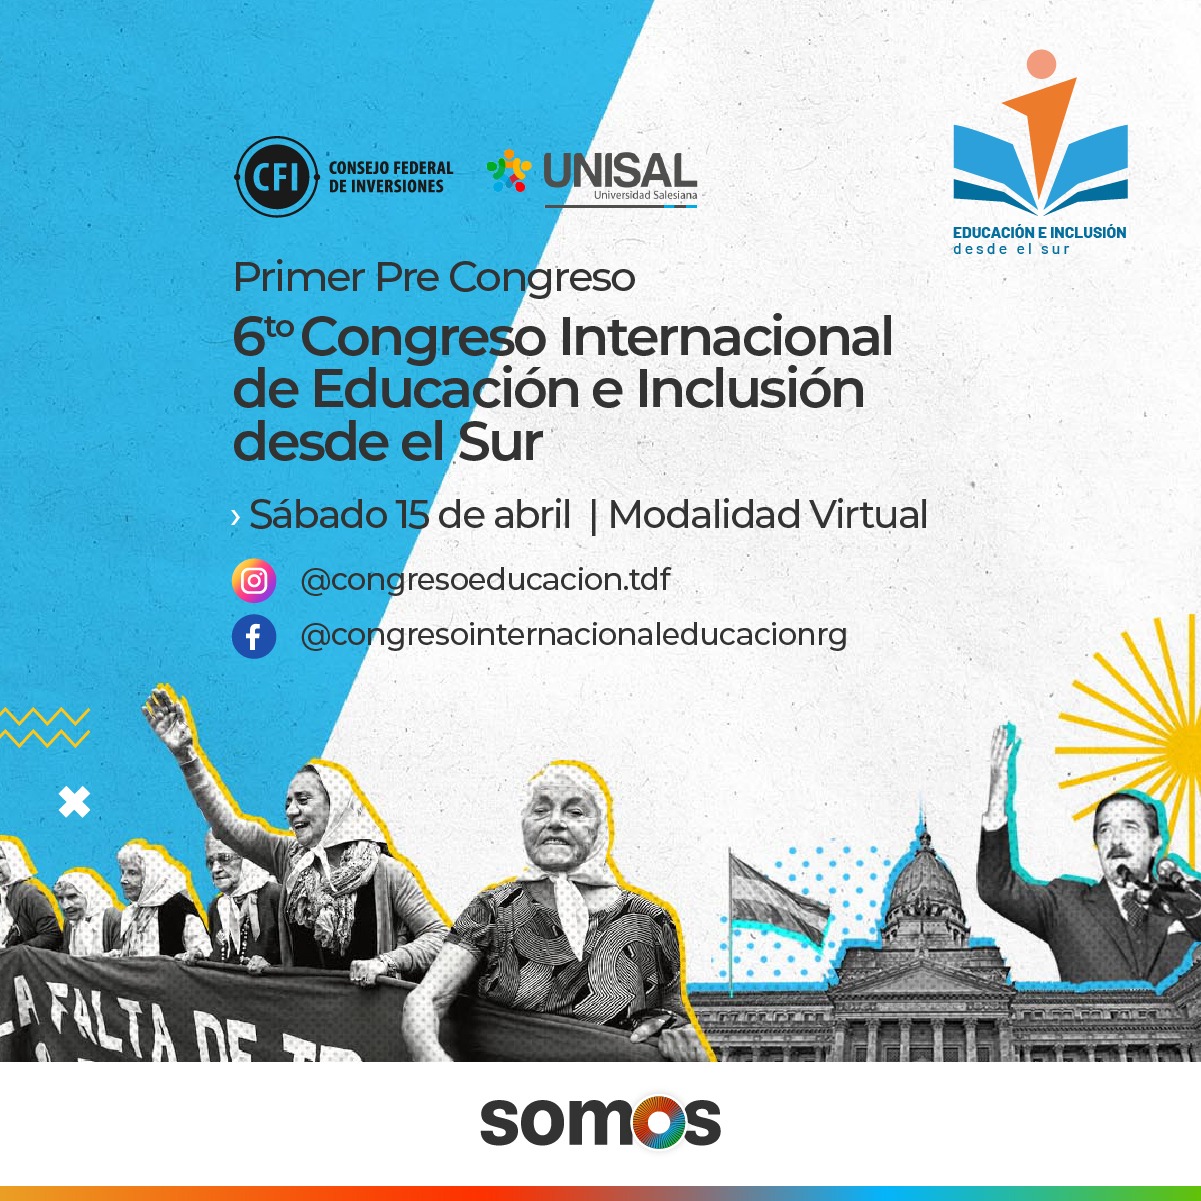 6to Congreso Internacional de Educación e Inclusión desde el Sur 2023 “40 años - hacer nuestra Democracia más democrática”